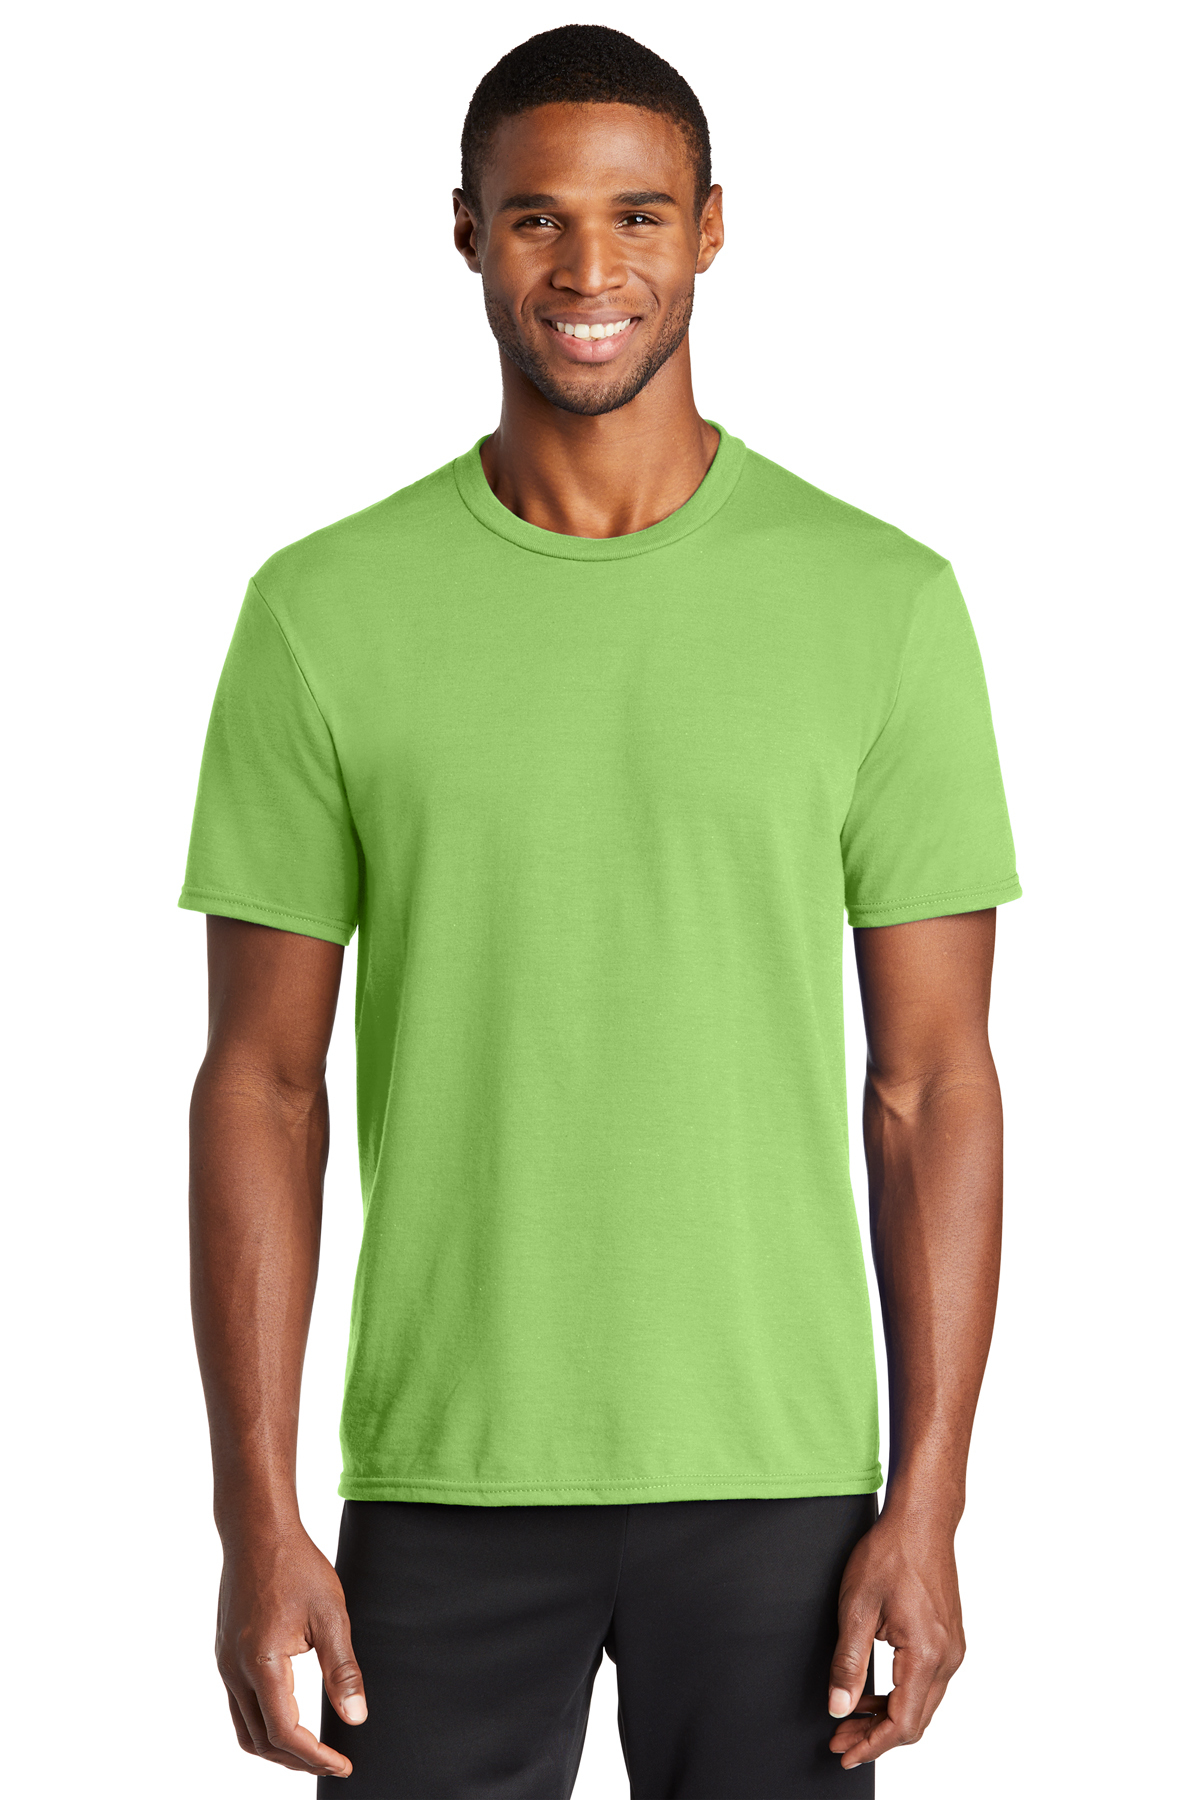 SanMar Wholesale Men's Plain T-Shirt